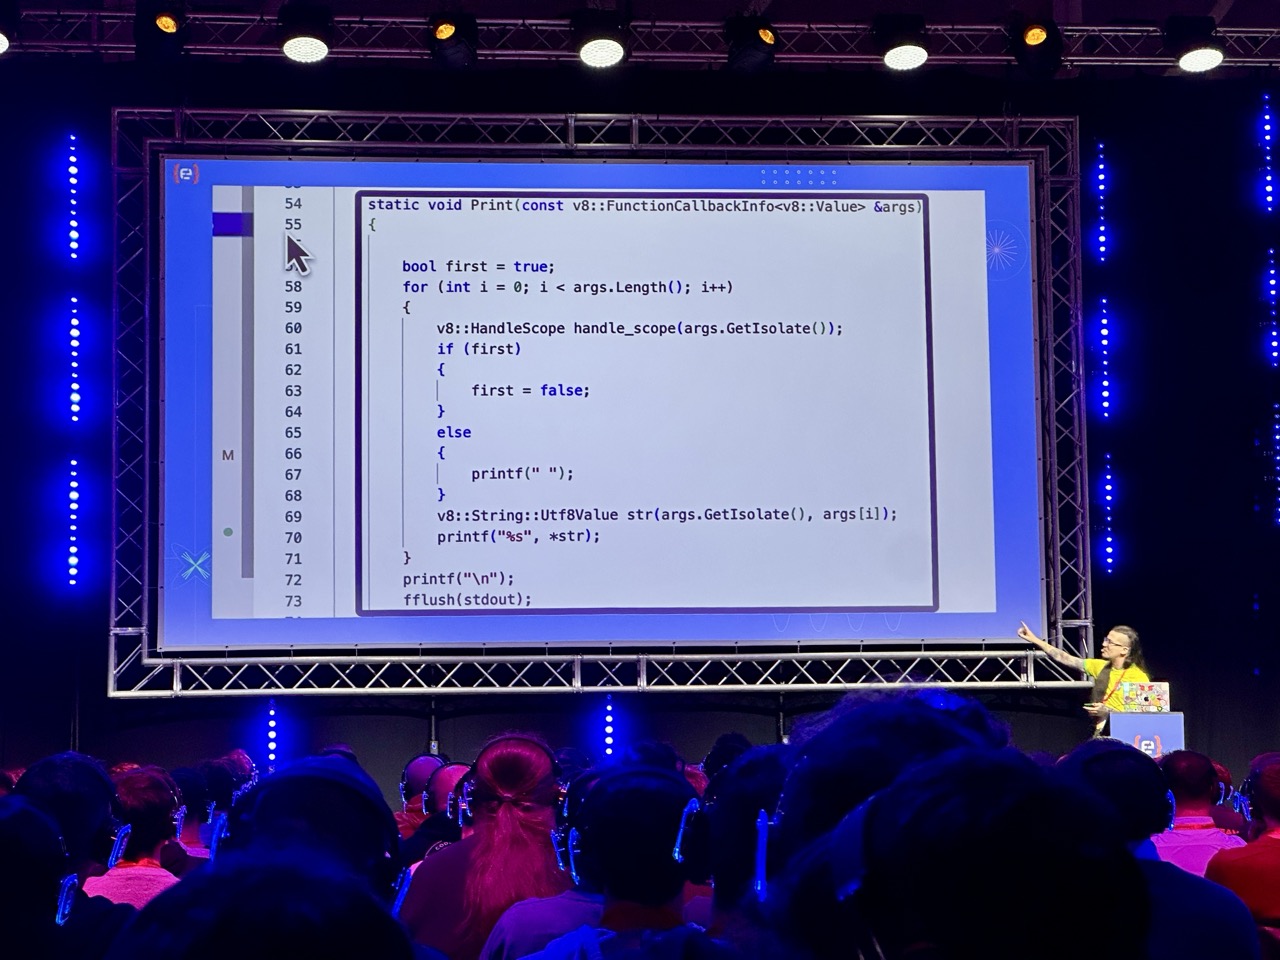 Erick Wendel - Bun, Deno, Node.js? Recreating a JavaScript runtime from Scratch